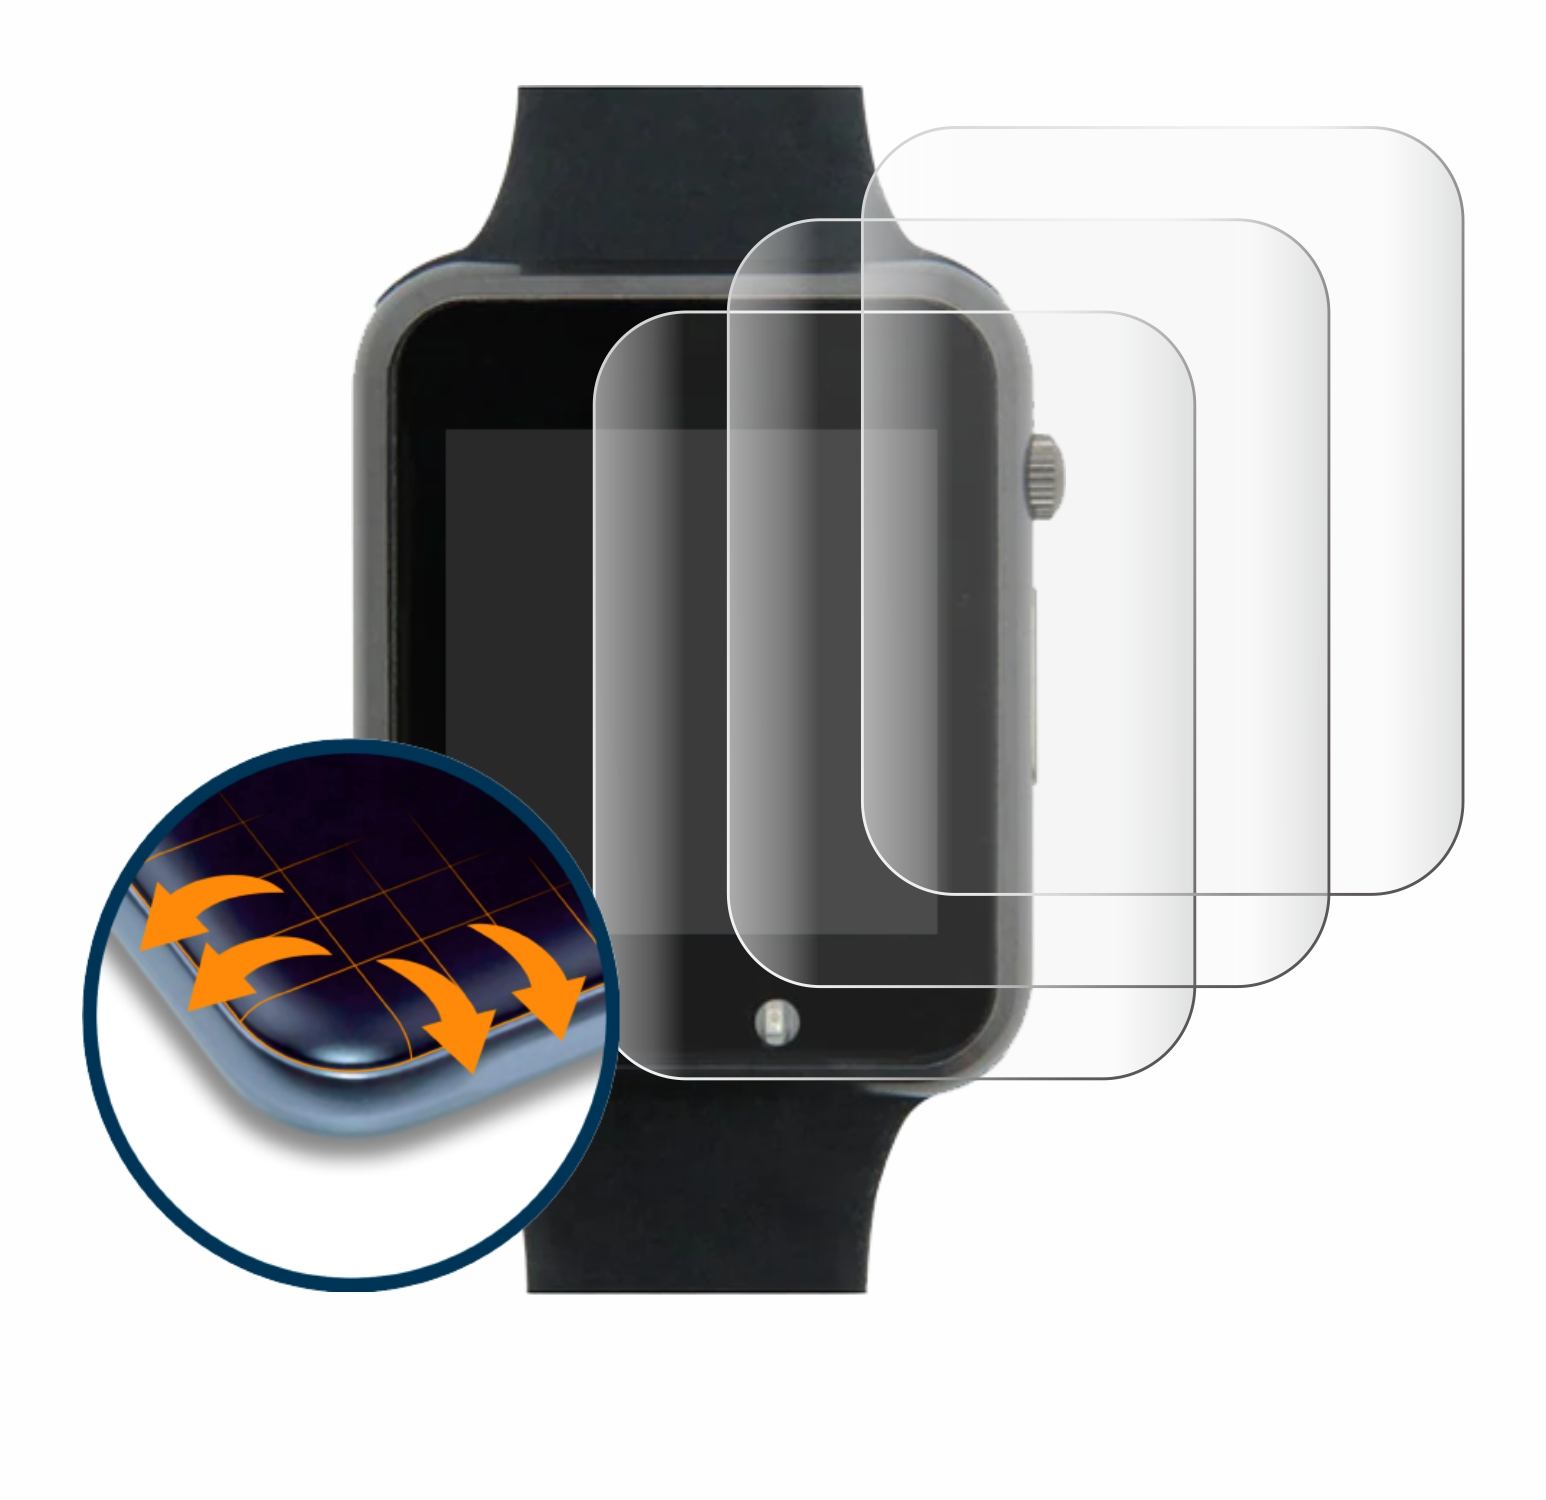 SAVVIES 4x Flex Full-Cover 3D Lilygo 2020 V3) T-Watch Curved Schutzfolie(für